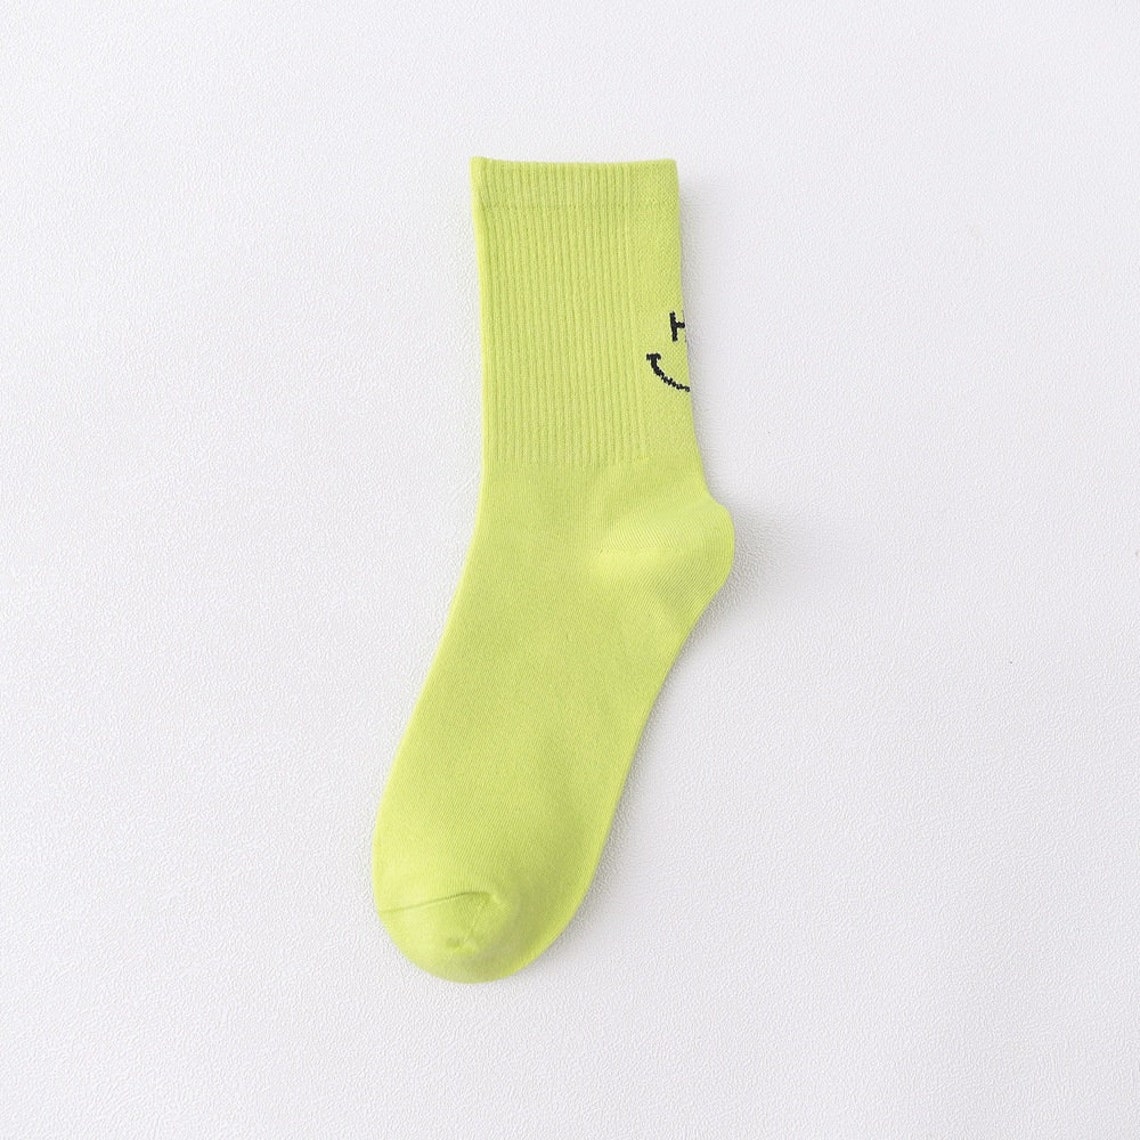 6 pairs smiley face socks mid ankle socks women summer | Etsy